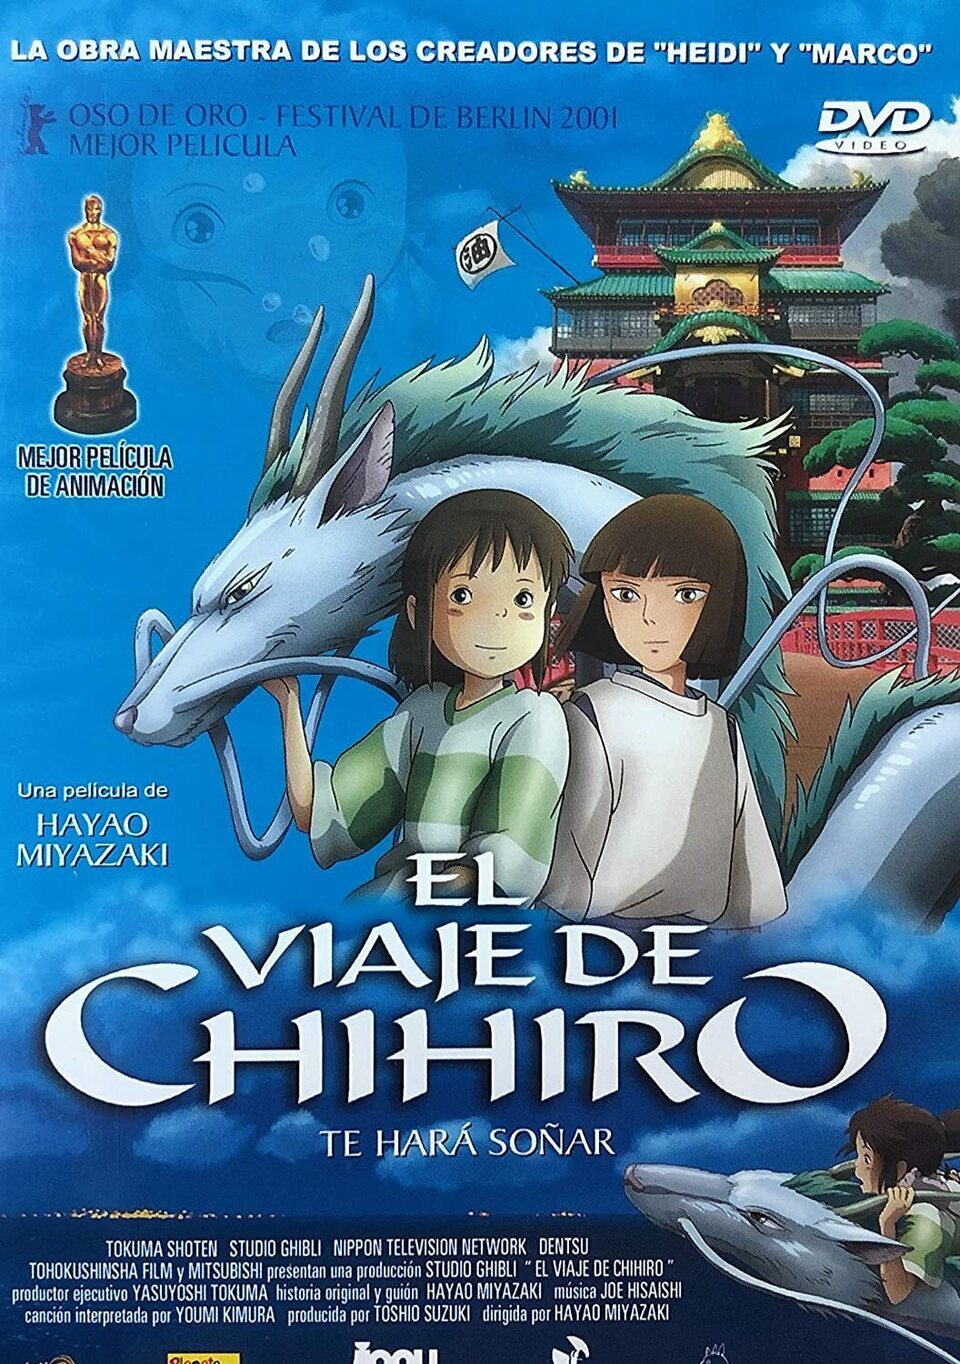 España #4 - Cartel de El viaje de Chihiro (2001) - eCartelera